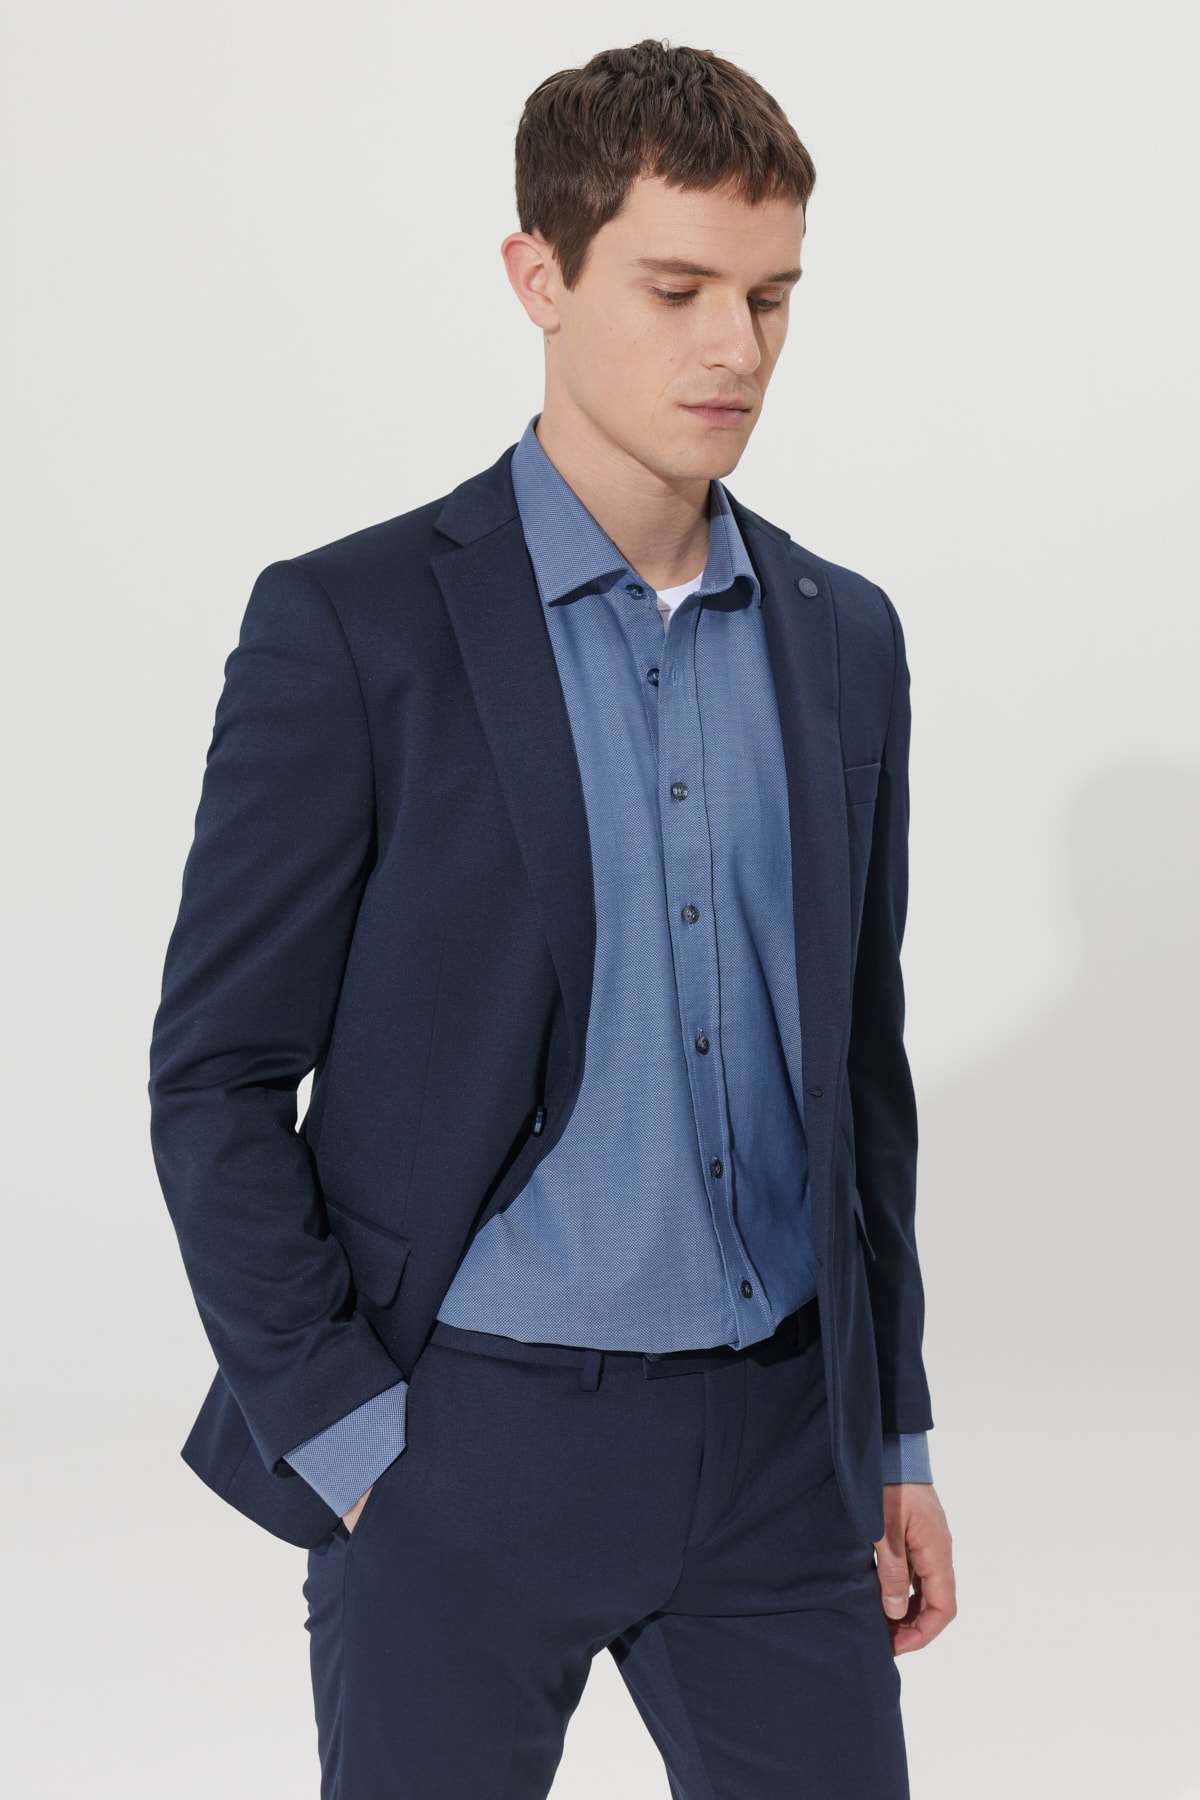 Levně ALTINYILDIZ CLASSICS Men's Navy Blue Slim Fit Slim Fit Monocollar Navy Blue Suit.